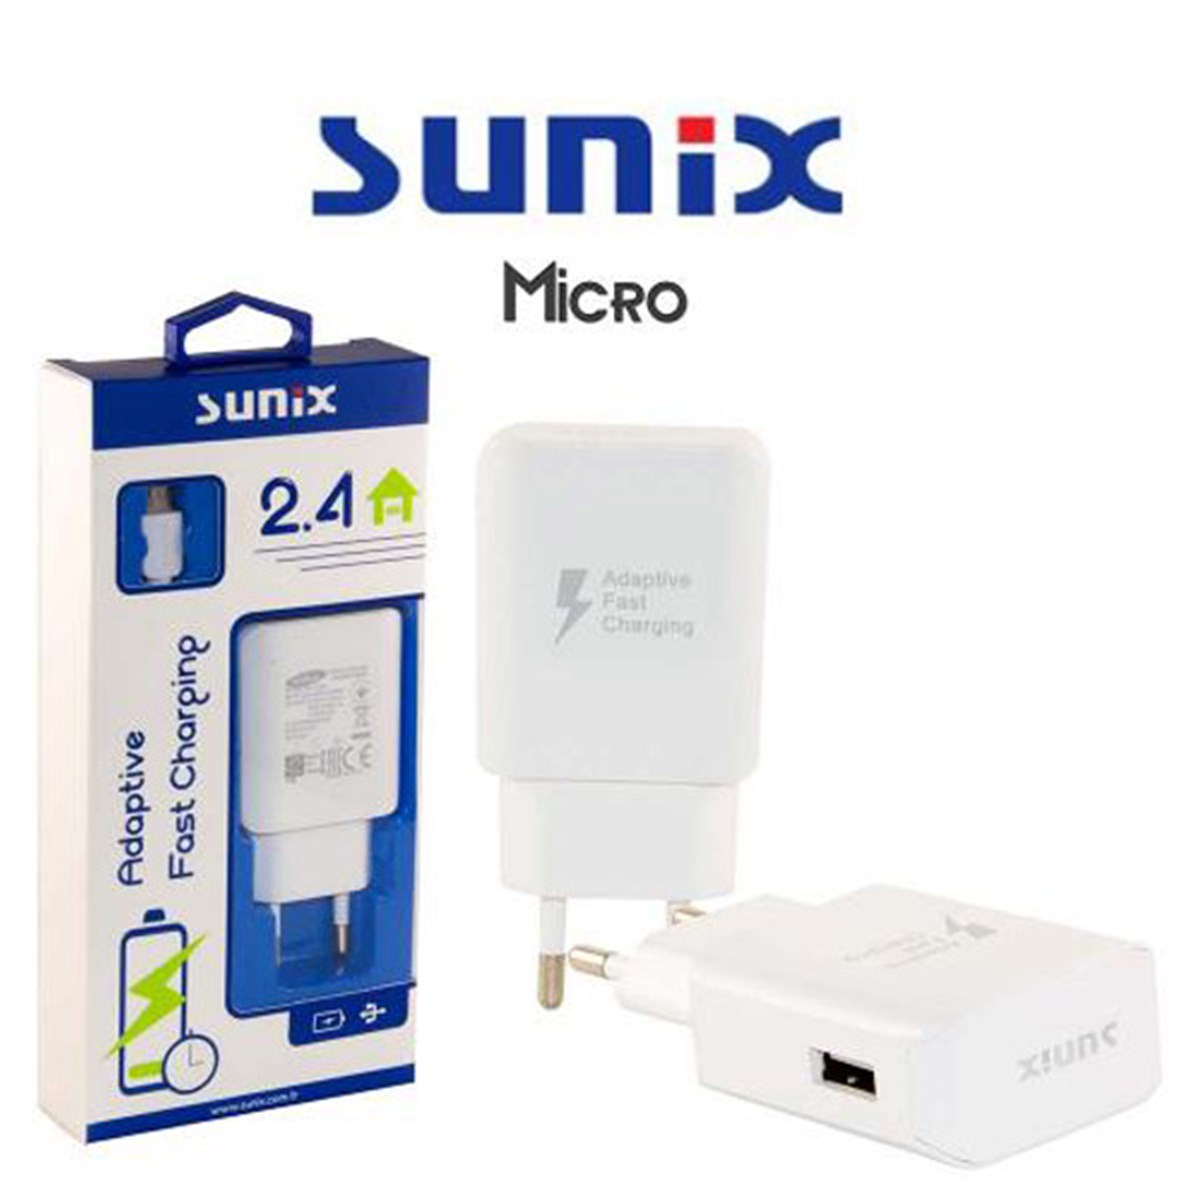 Sunix Micro Hızlı Şarj Cihazı | Mobicaps